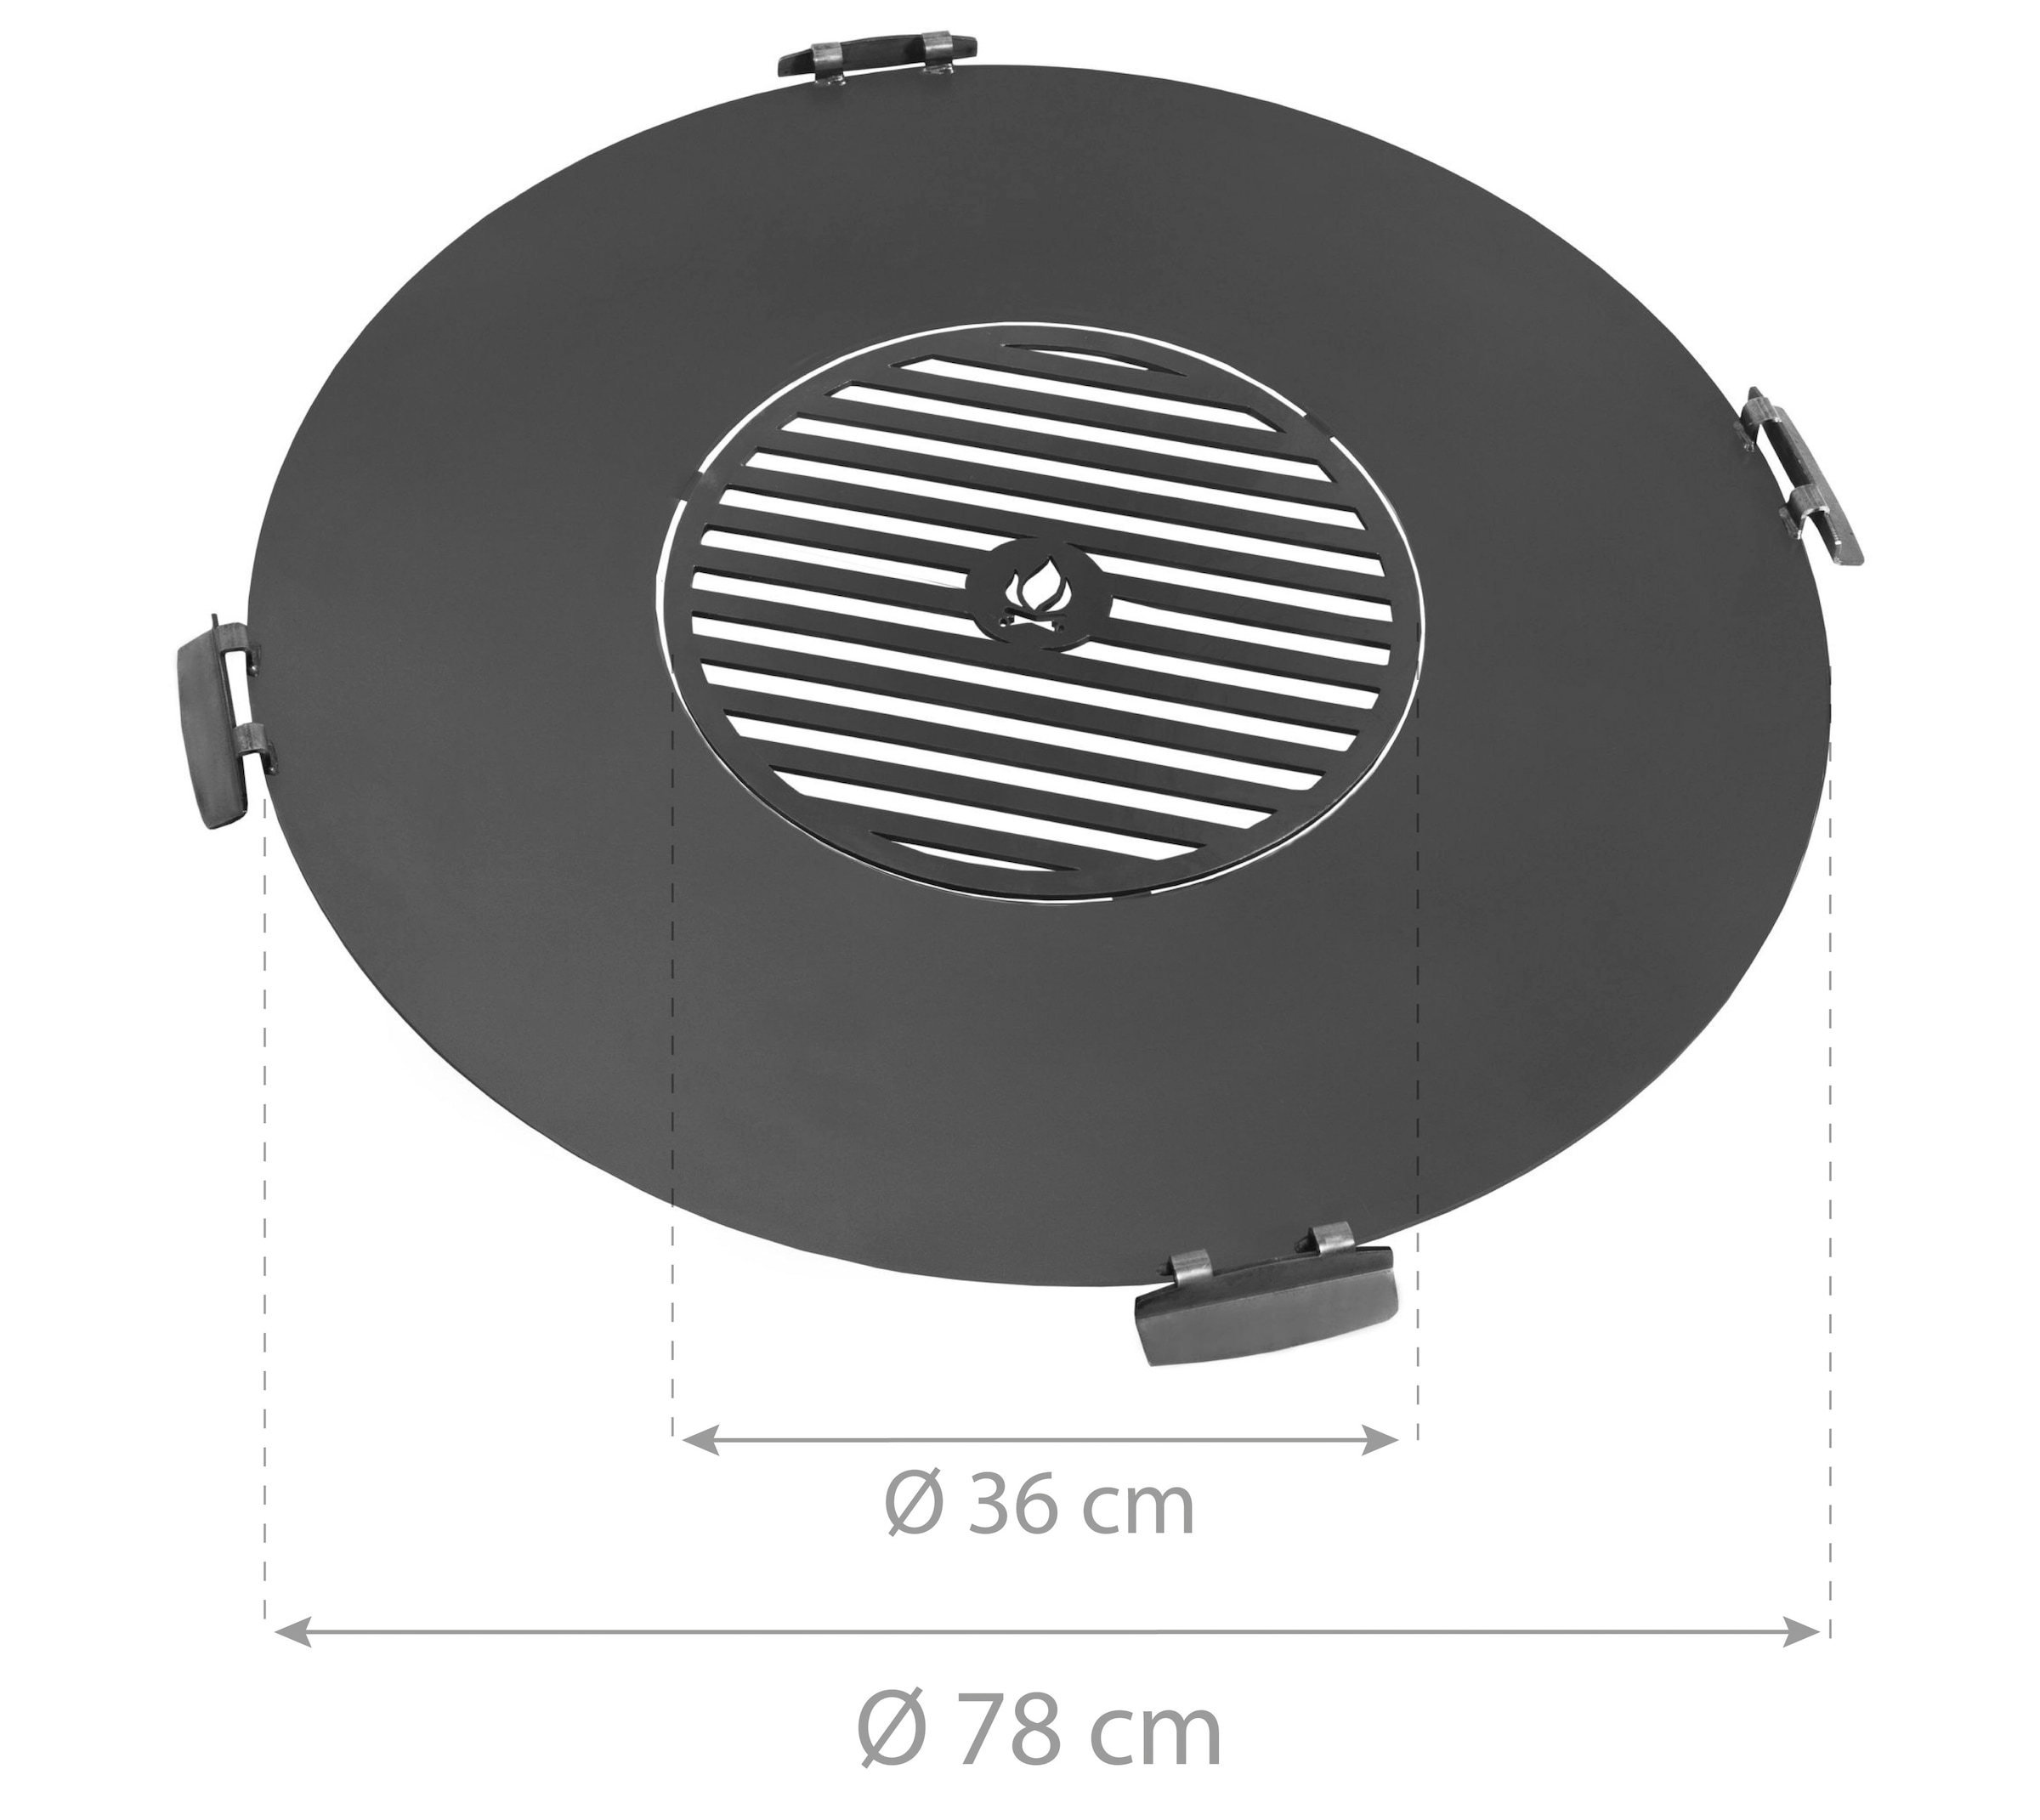 CookKing Grillplattenaufsatz, Stahl, mit Grillrost, Ø 78 cm, für Feuerschalen geeignet